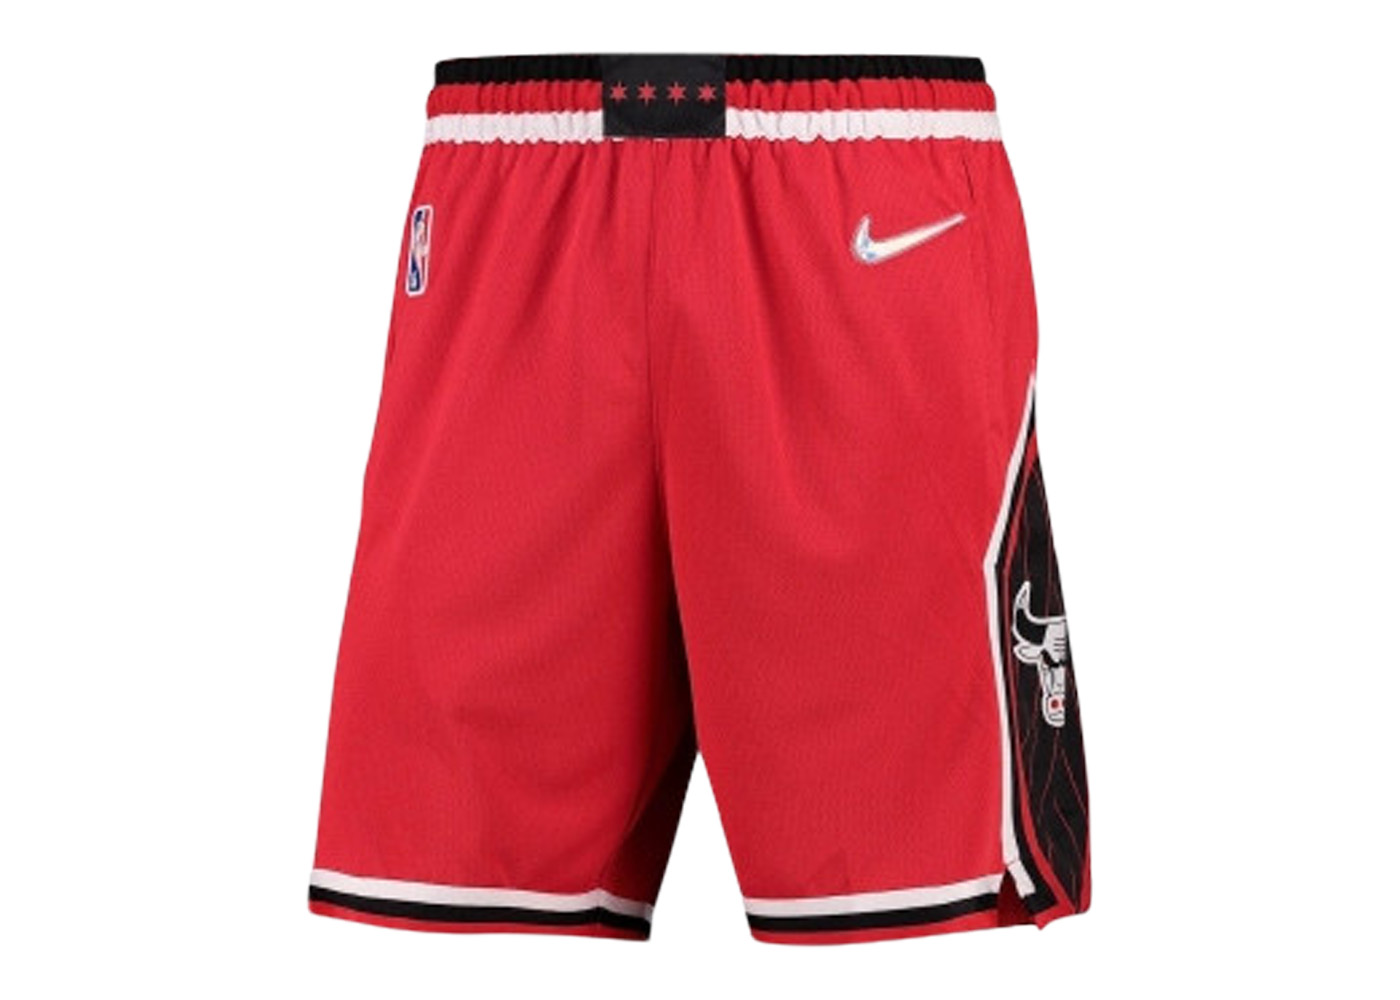 Nike NBA Miami Heat Icon Edition Shorts Black/Red/White